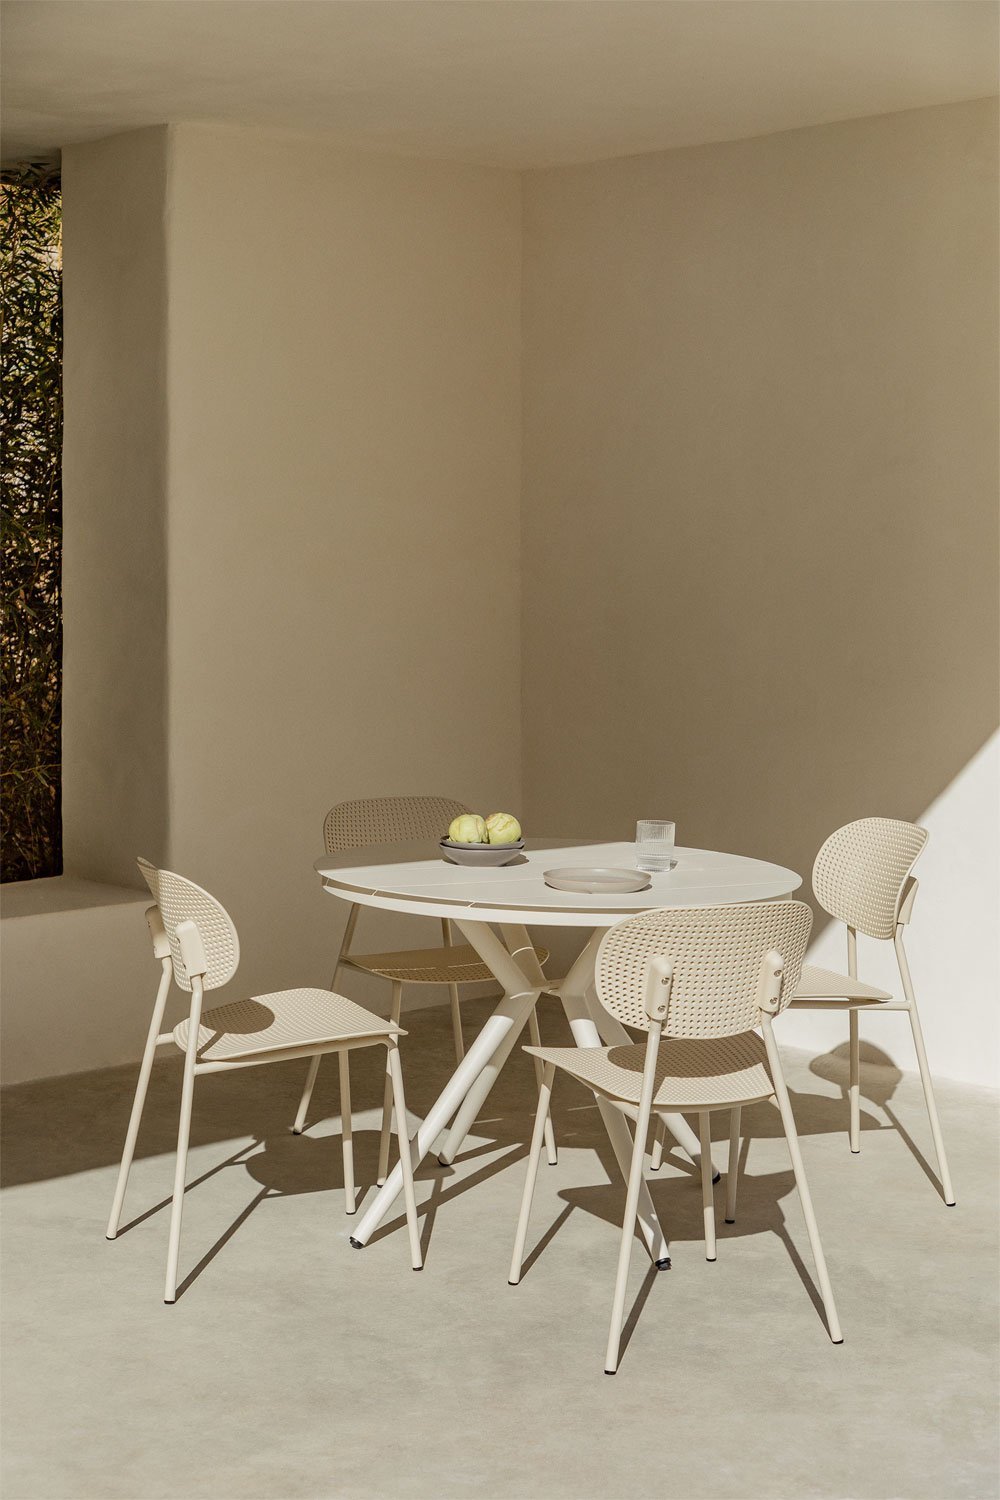 Zestaw okrągłego stołu aluminiowego Valerie (średnica 100 cm) i 4 krzesła ogrodowe Tupah, obrazek w galerii 1